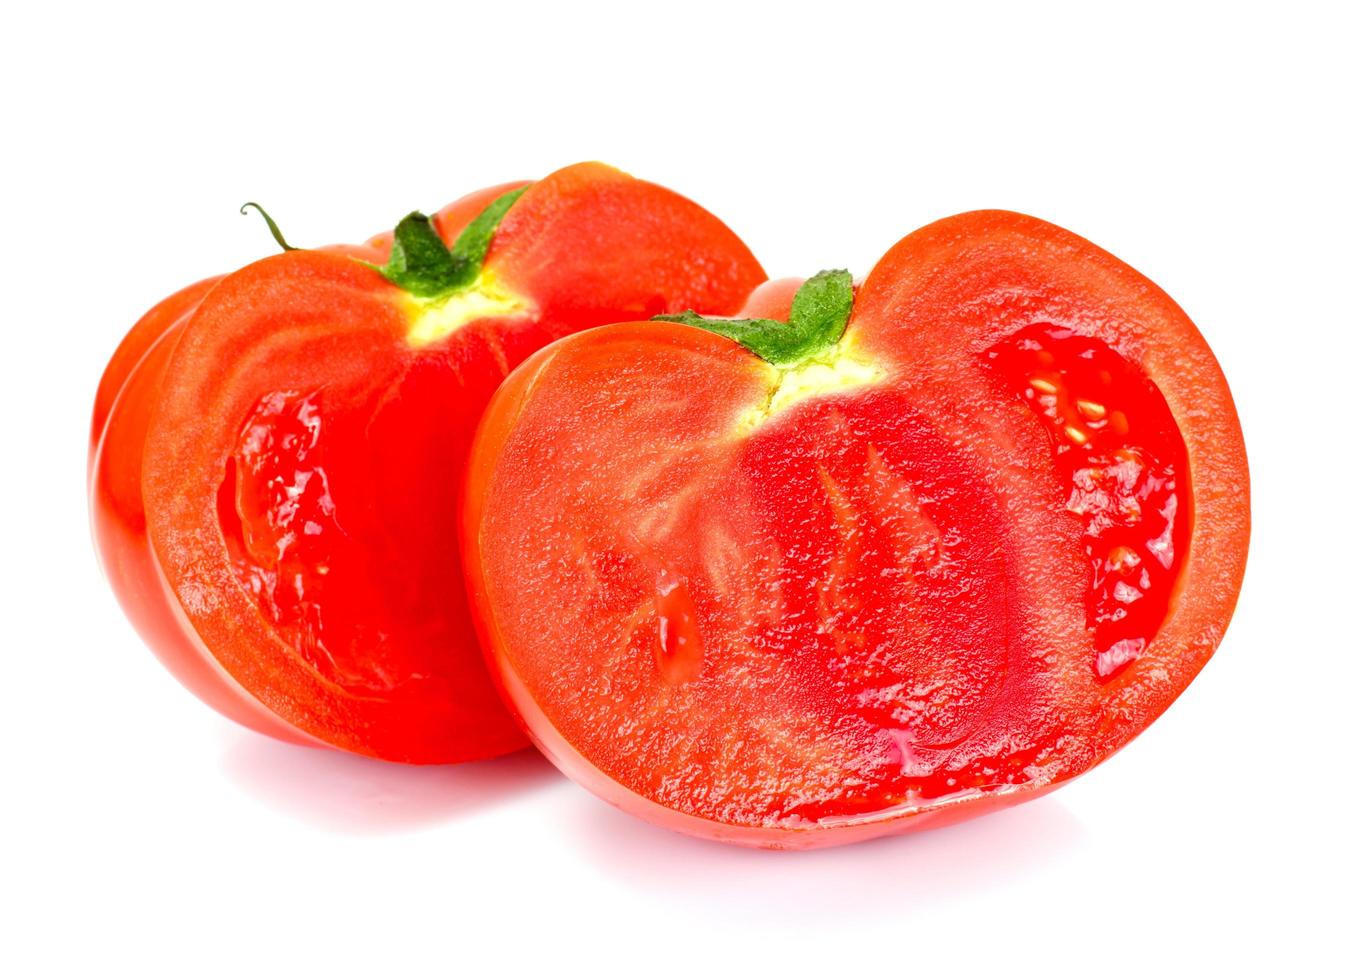 röda tomater isolerad på en vit bakgrund foto